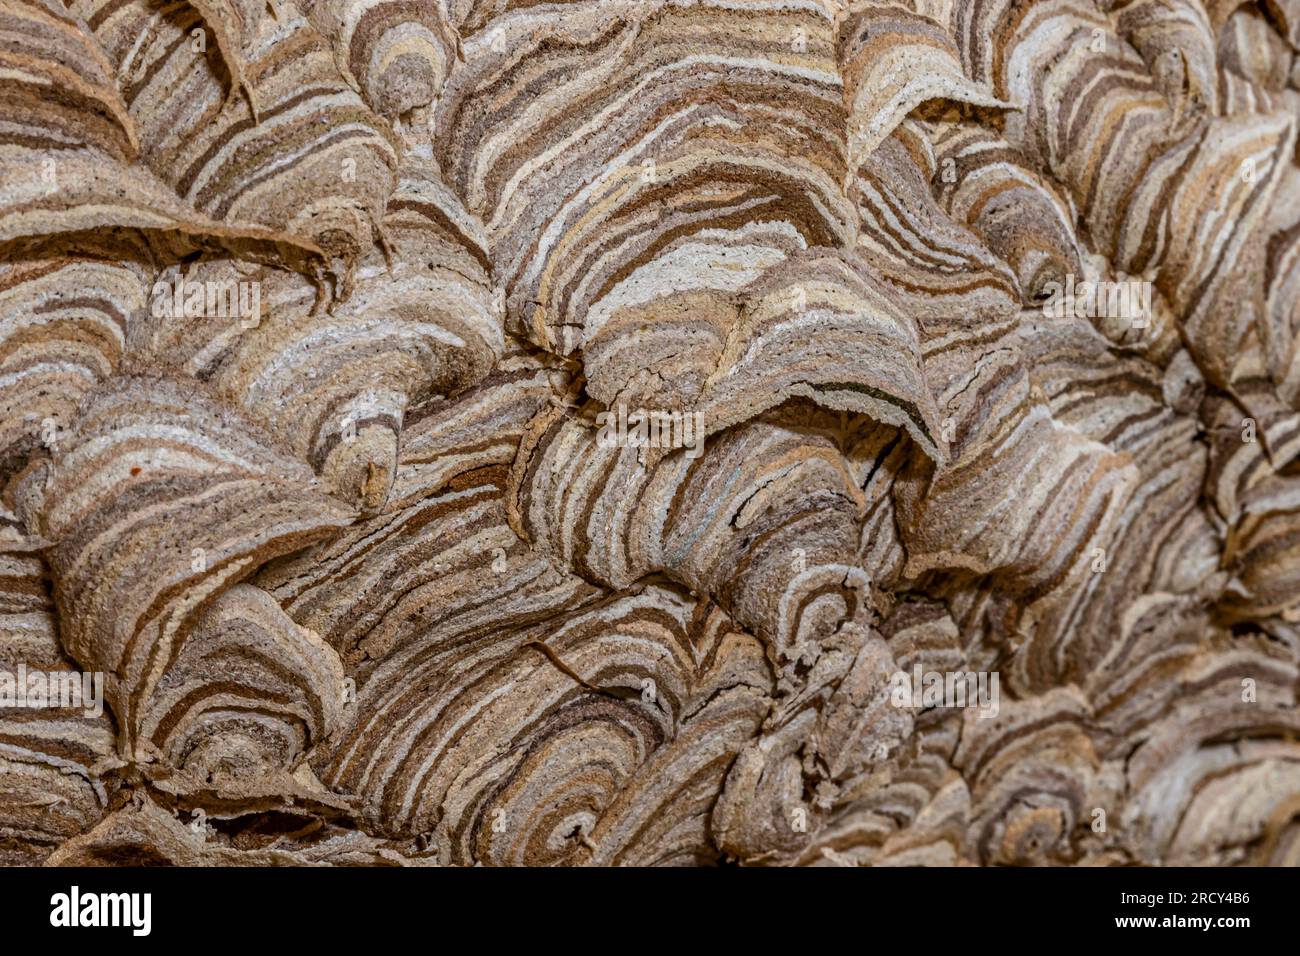 Primo piano del dettaglio esterno di un nido di vespe, mostrando gli intricati dettagli di migliaia di sottili ventole di carta come materiale utilizzato per costruire il nido. Foto Stock